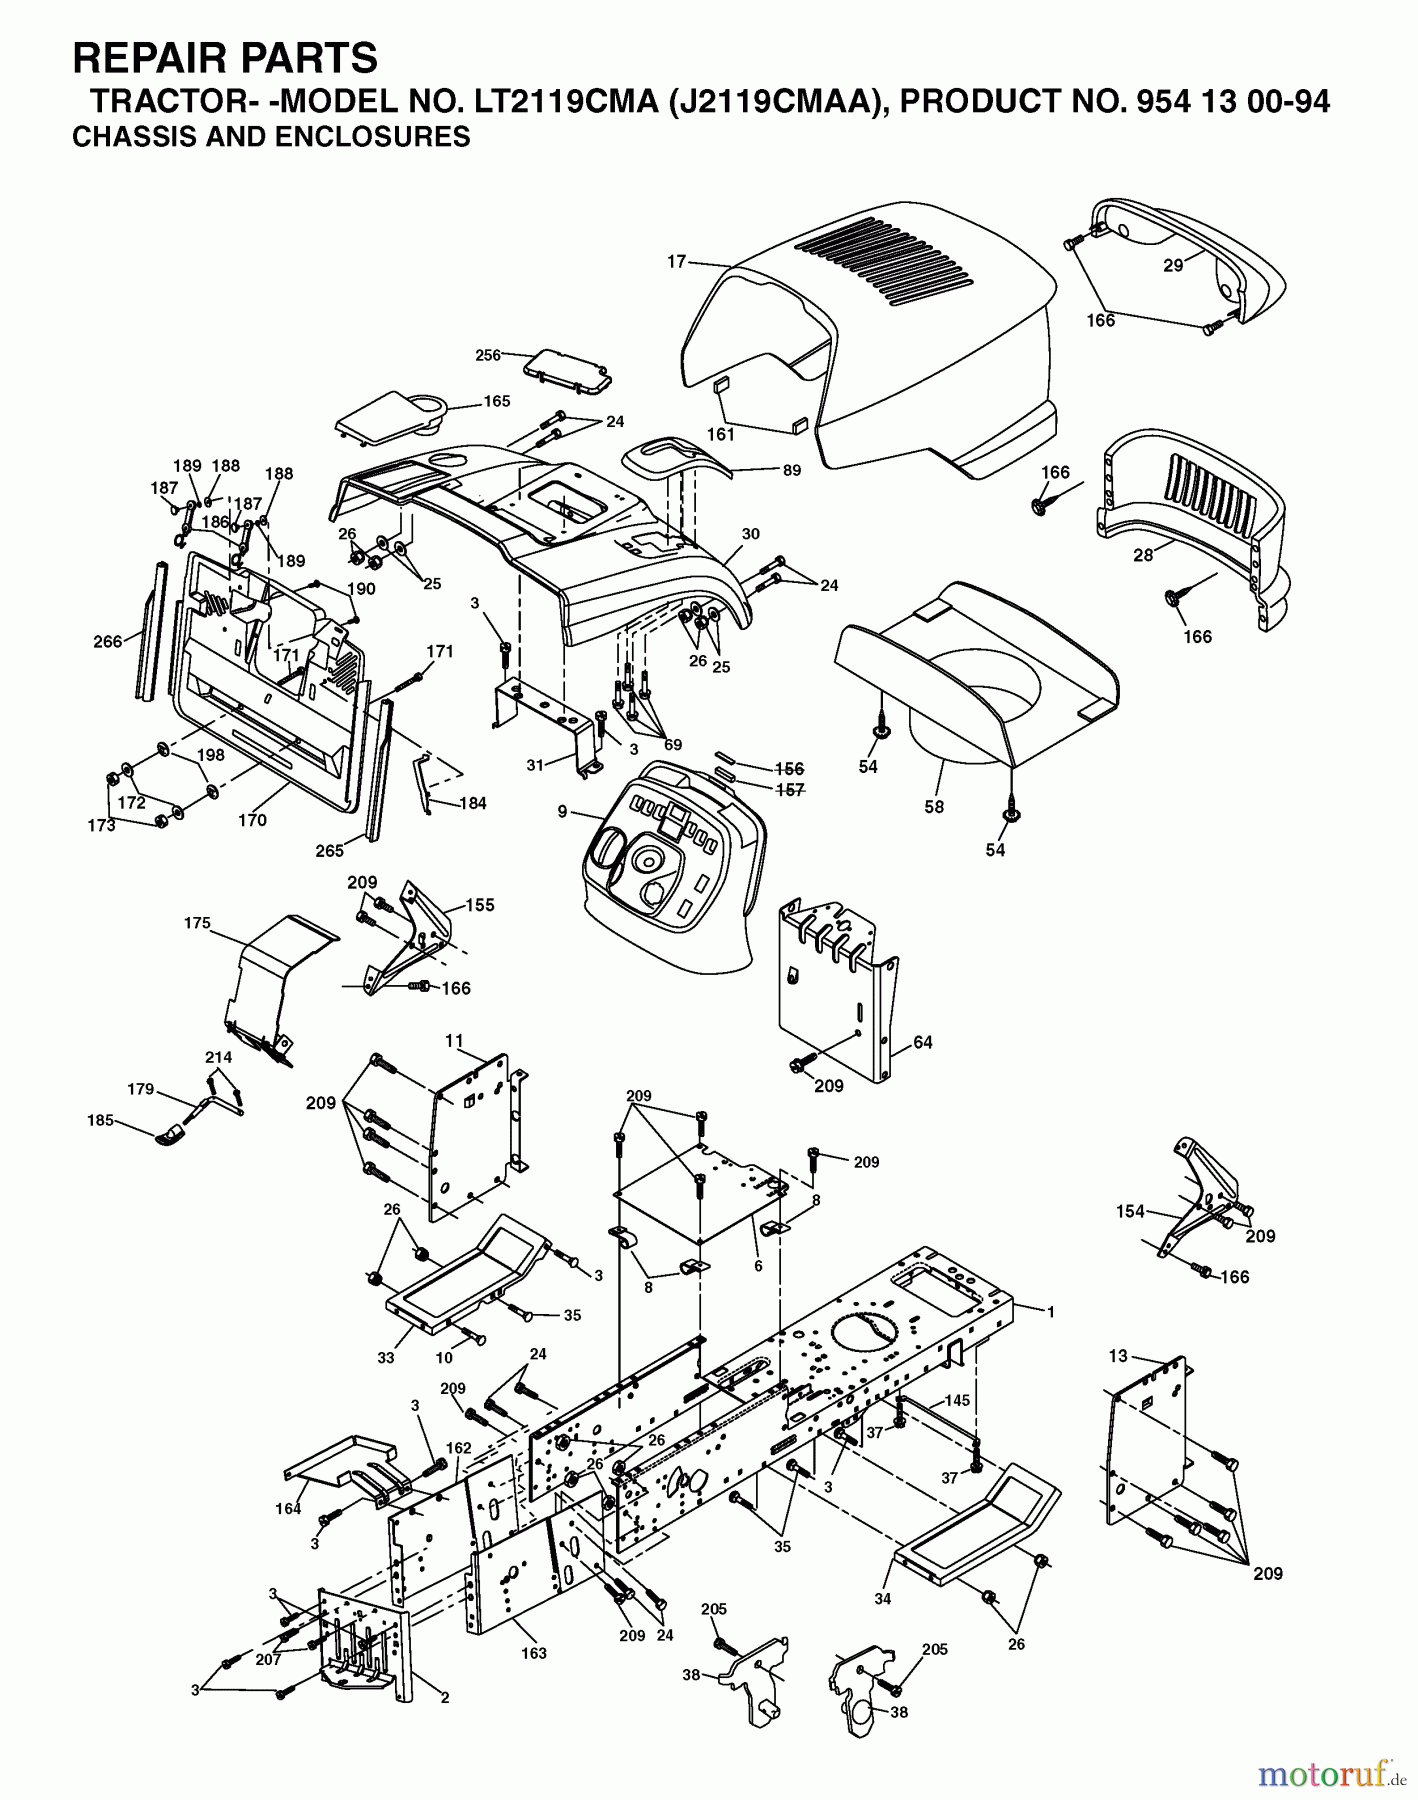  Jonsered Rasen  und Garten Traktoren LT2119 CMA (J2119CMAA, 954130094) - Jonsered Lawn & Garden Tractor (2003-01) CHASSIS ENCLOSURES